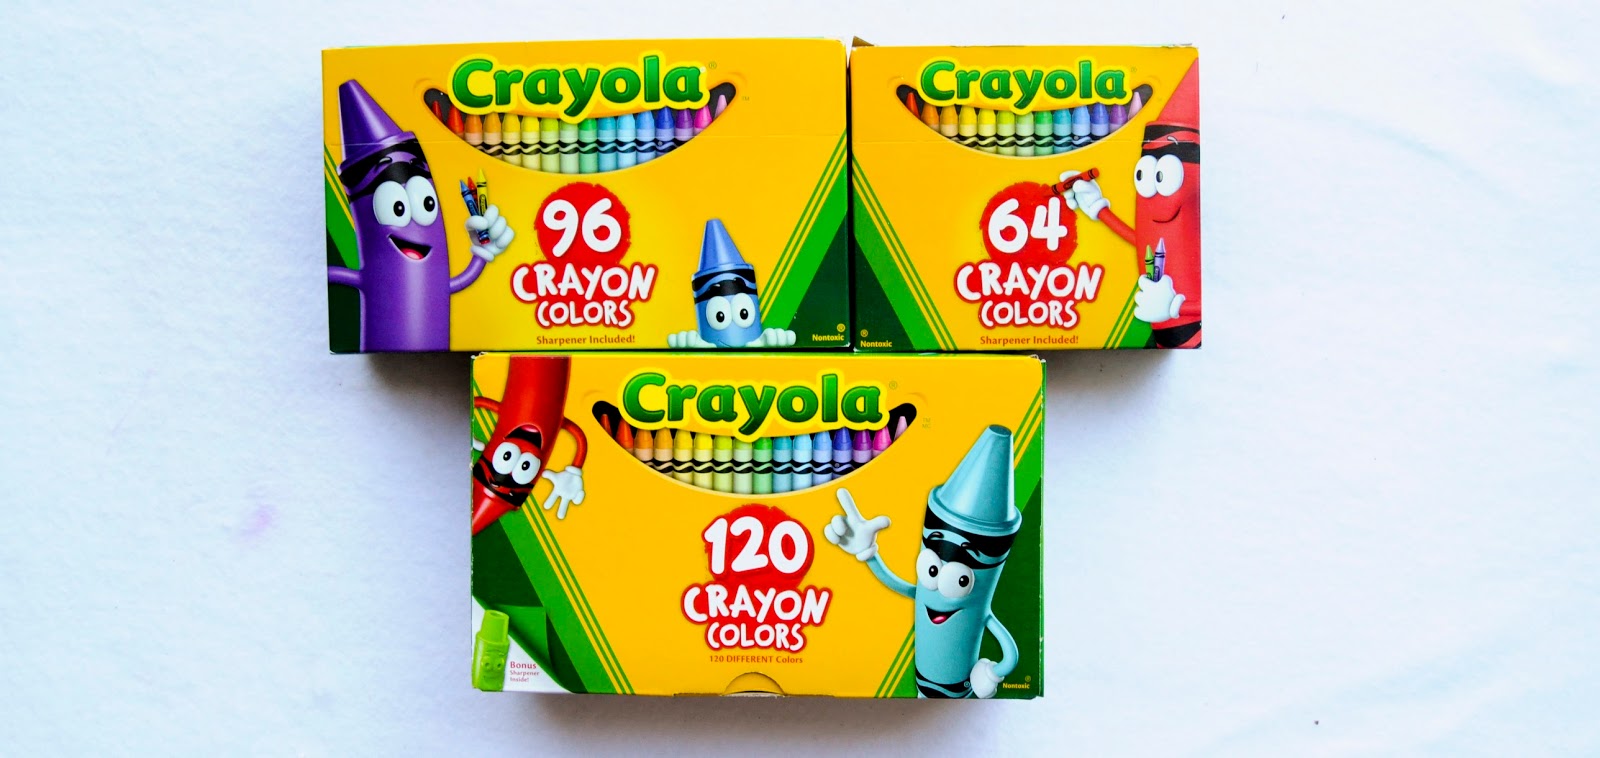 Crayola 120 Crayons, Crayola.com